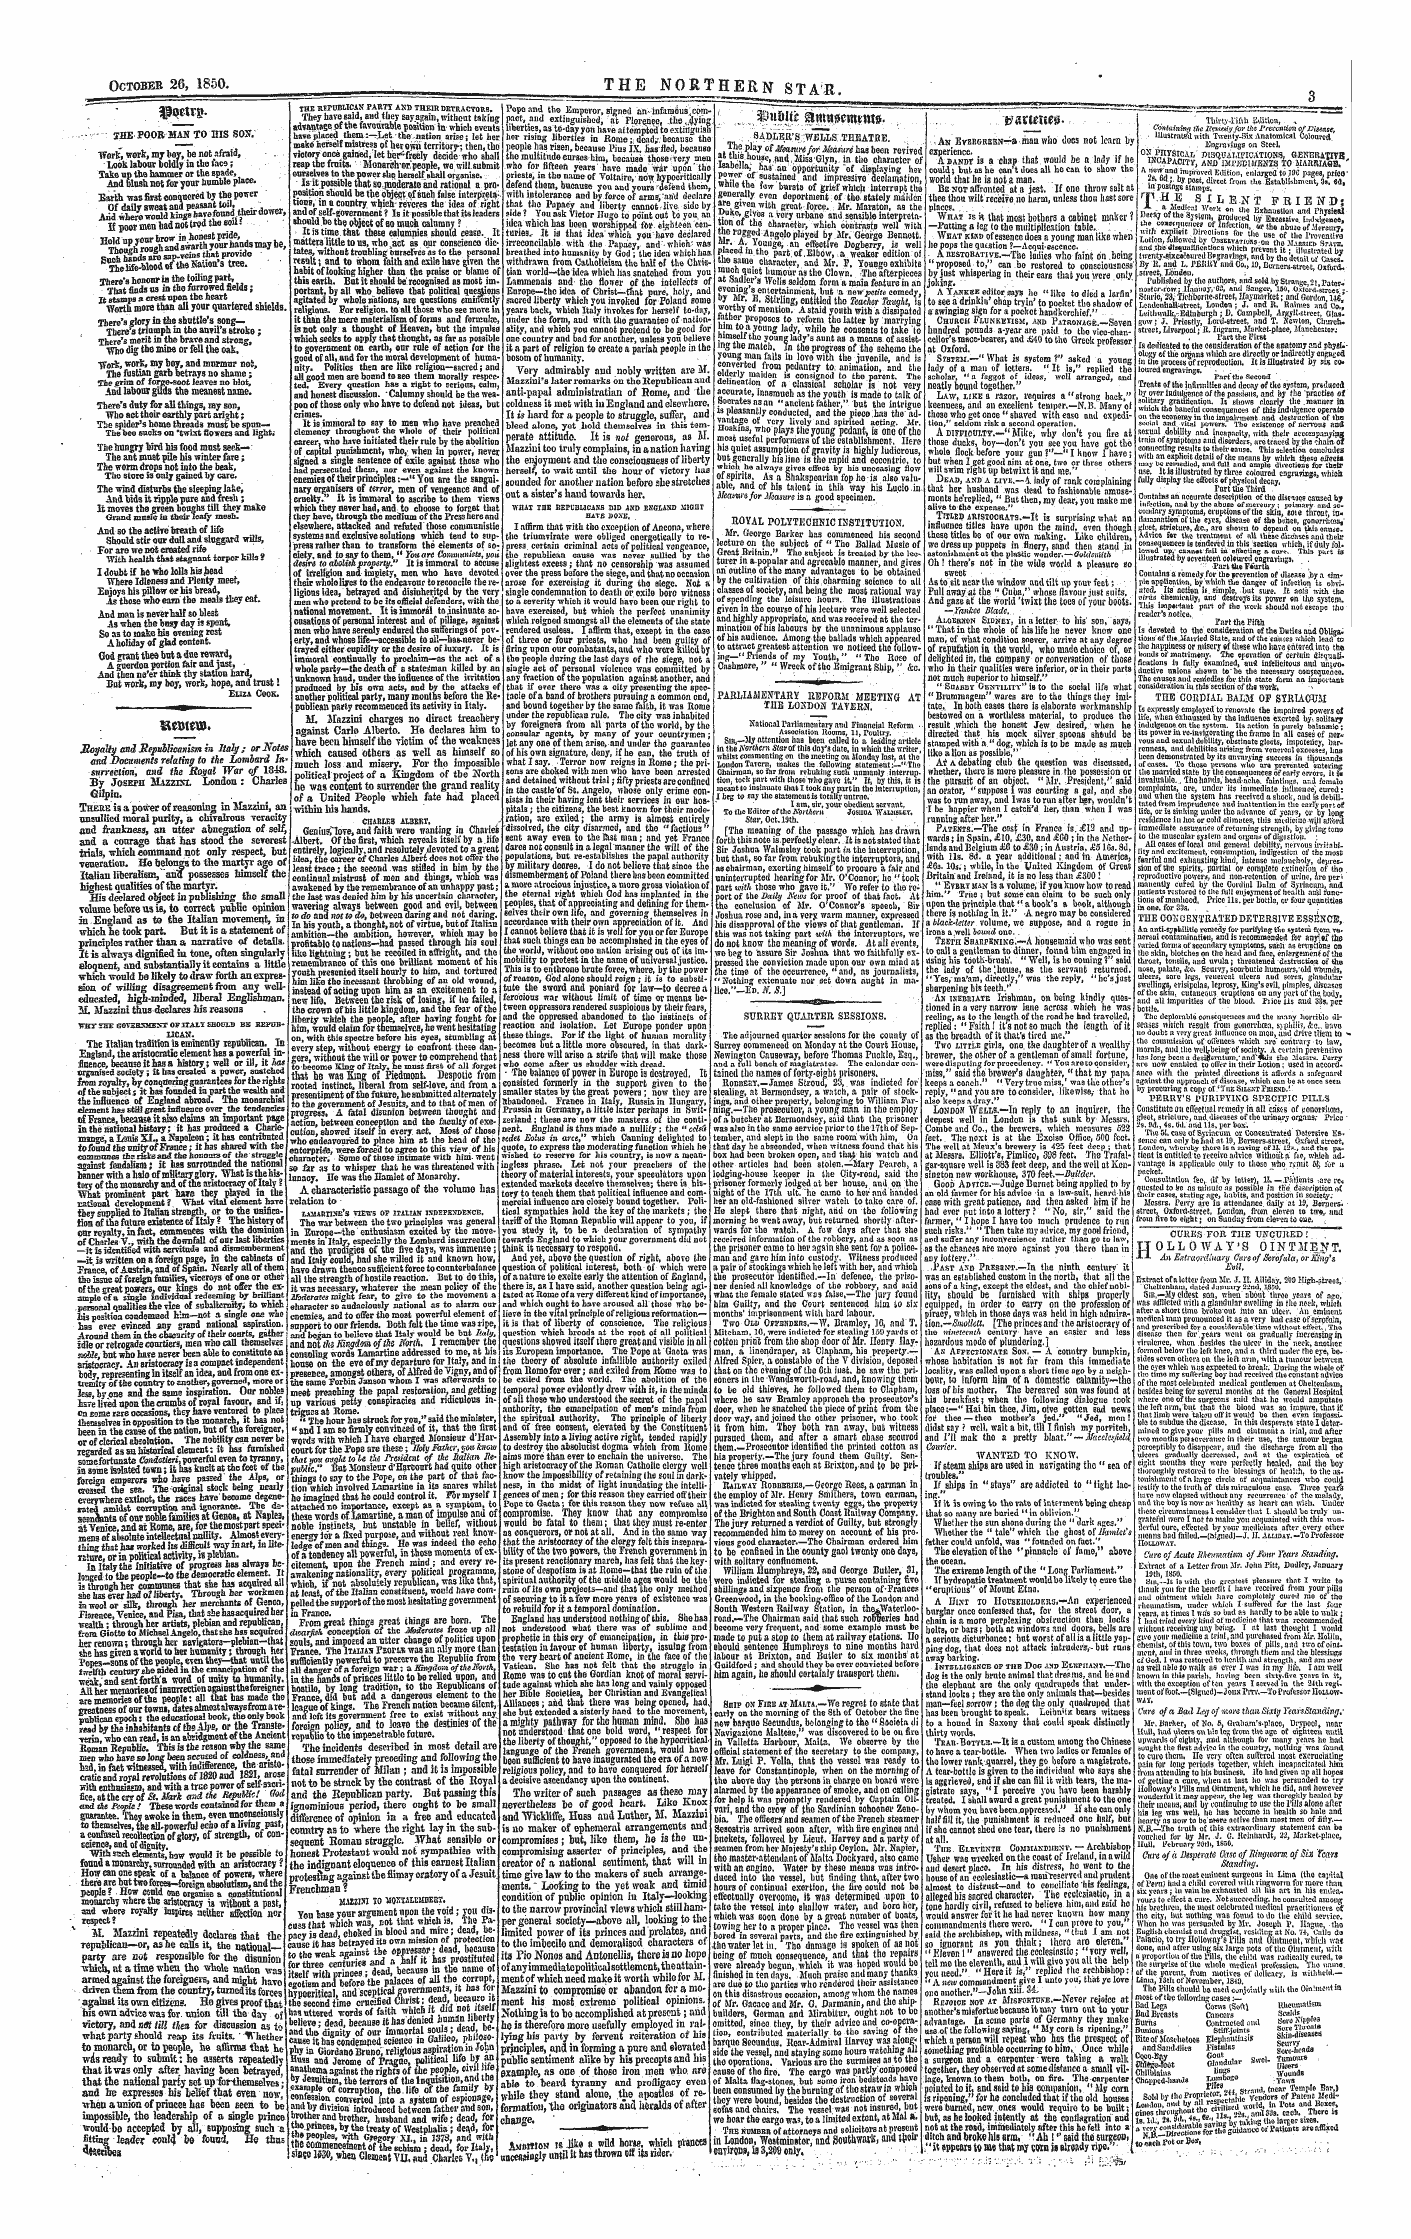 Northern Star (1837-1852): jS F Y, 1st edition - Pjetrg. 33flf Tr» Vv Lm R